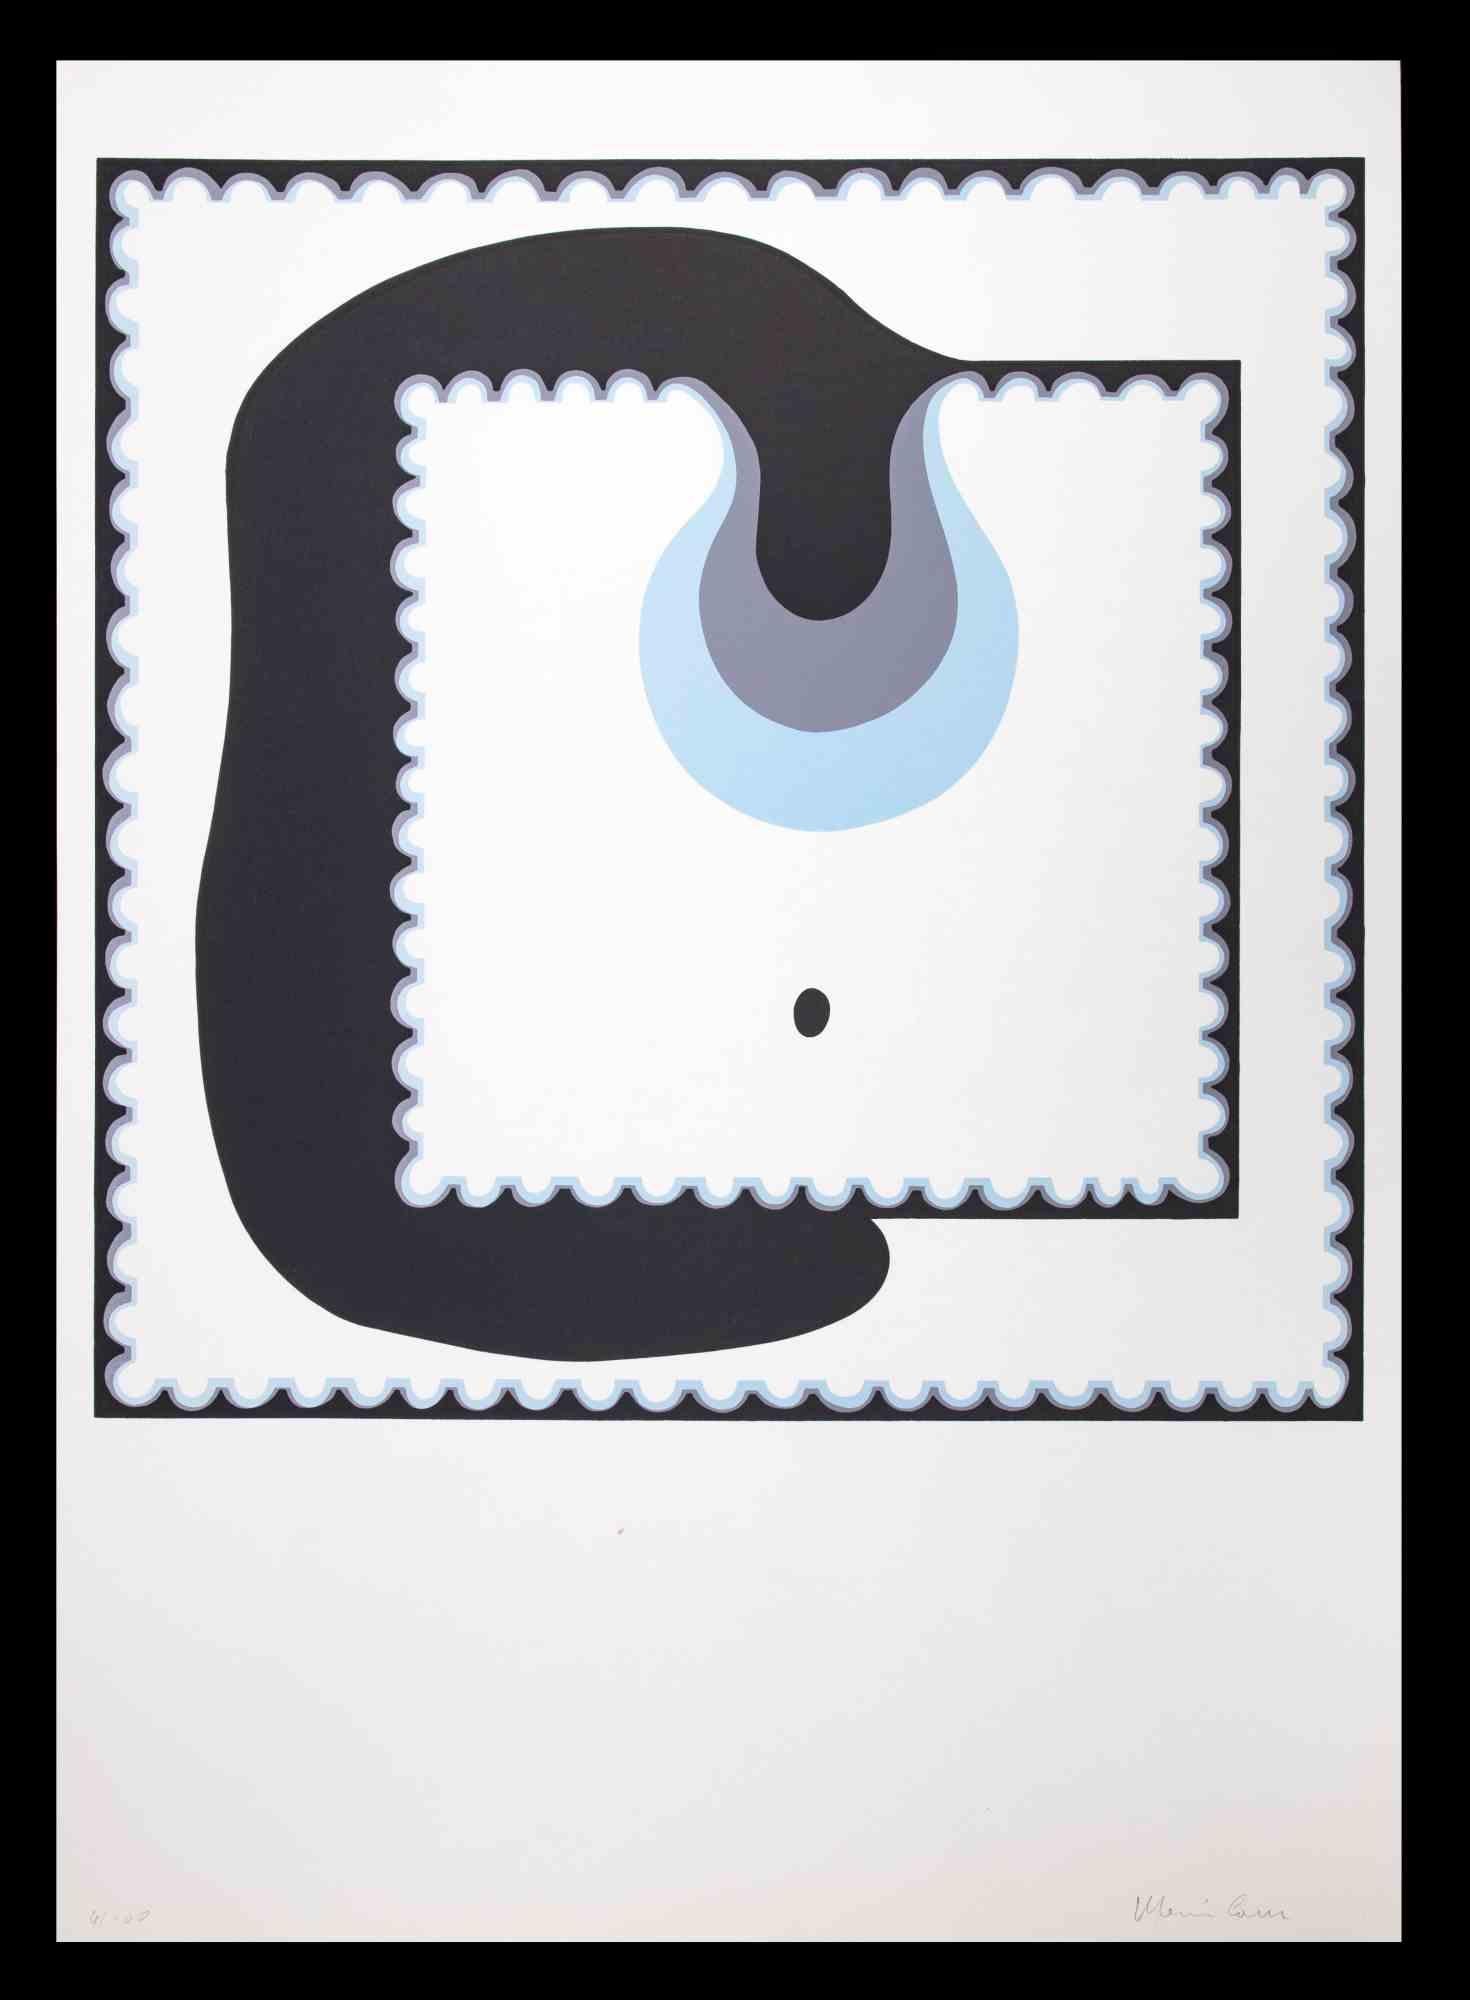 Abstract Composition ist ein Original-Siebdruck von Plinio Mesciulam aus dem Jahr 1973.

Sehr guter Zustand auf einem weißen Karton.

Vom Künstler am unteren Rand handsigniert und nummeriert.

Limitierte Auflage n.4 von 100 Exemplaren, Herausgeber "